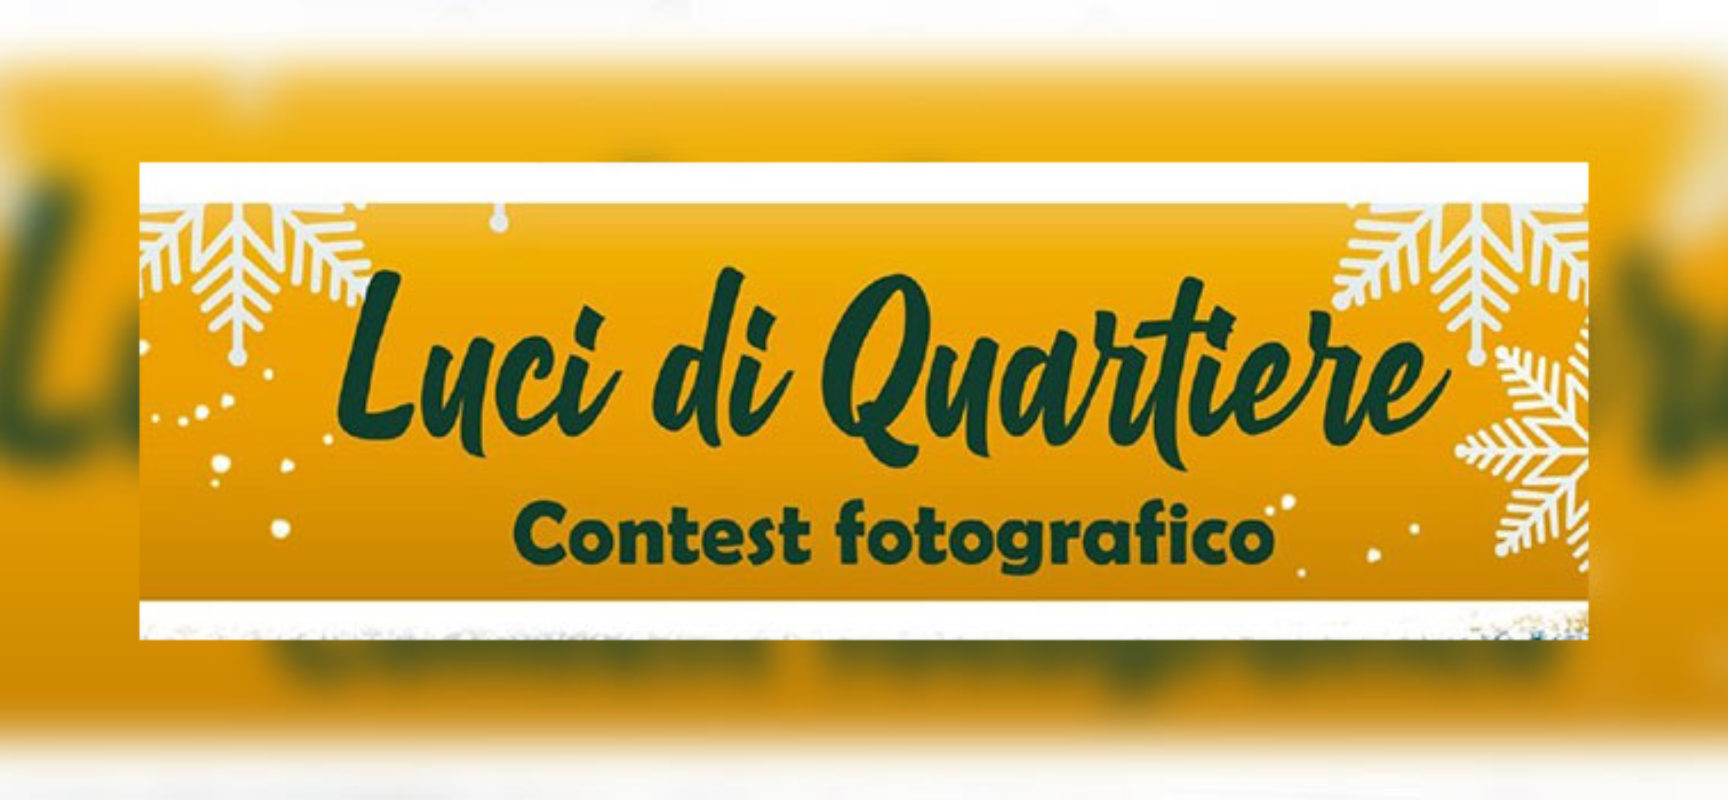 Conbitur promuove il contest fotografico “Luci di quartiere”